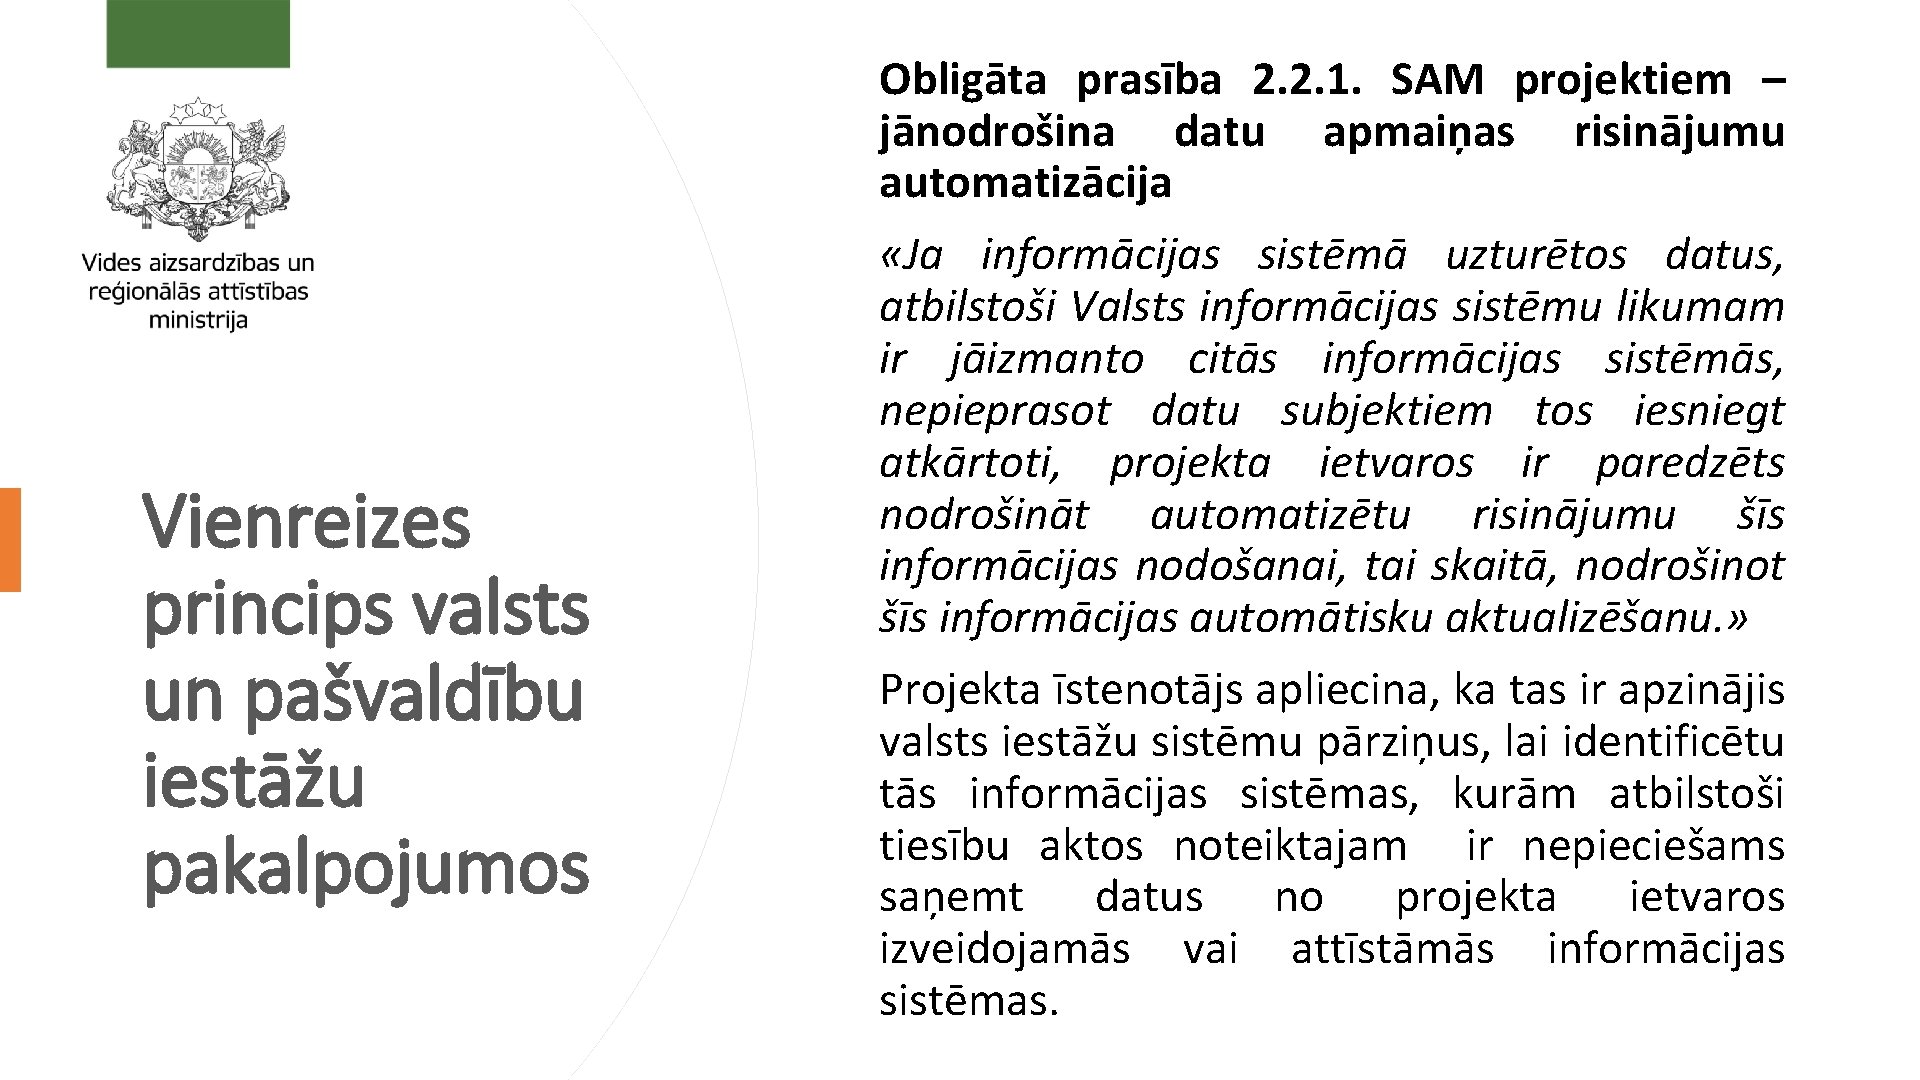 Vienreizes princips valsts un pašvaldību iestāžu pakalpojumos Obligāta prasība 2. 2. 1. SAM projektiem